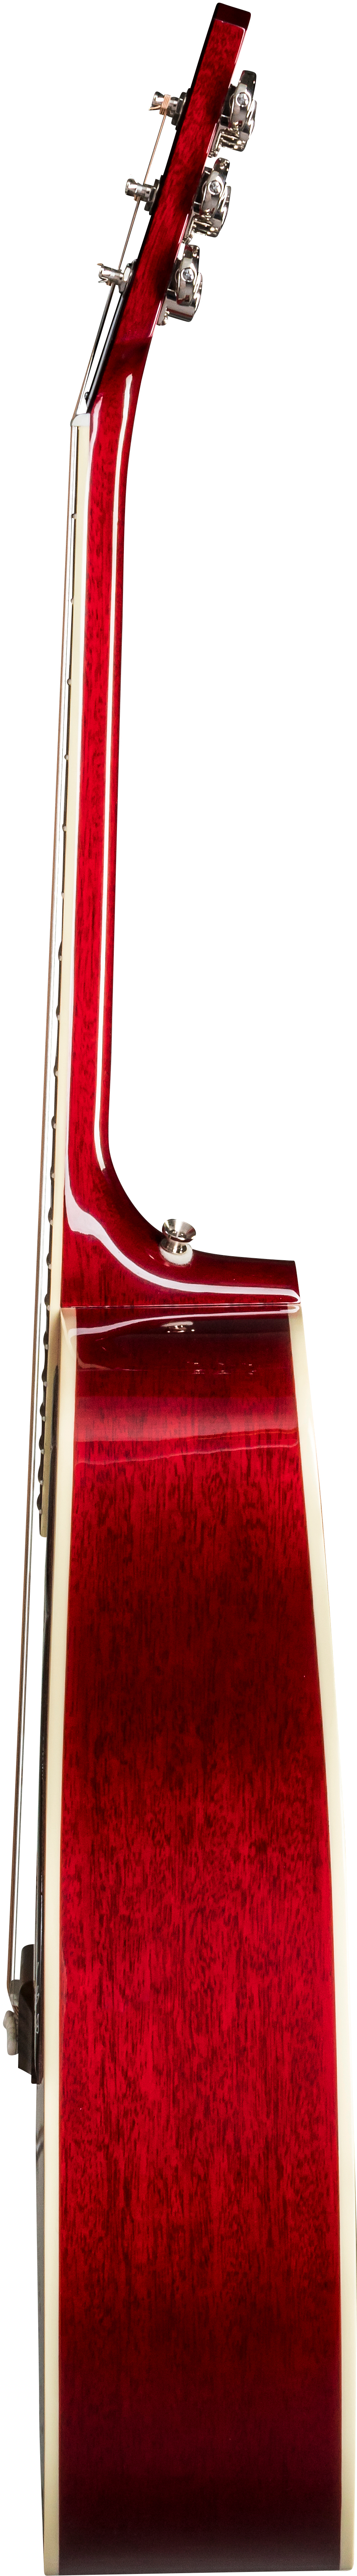 Gibson Hummingbird 2019 Dreadnought Epicea Acajou Rw - Vintage Cherry Sunburst - Guitarra acústica & electro - Variation 3